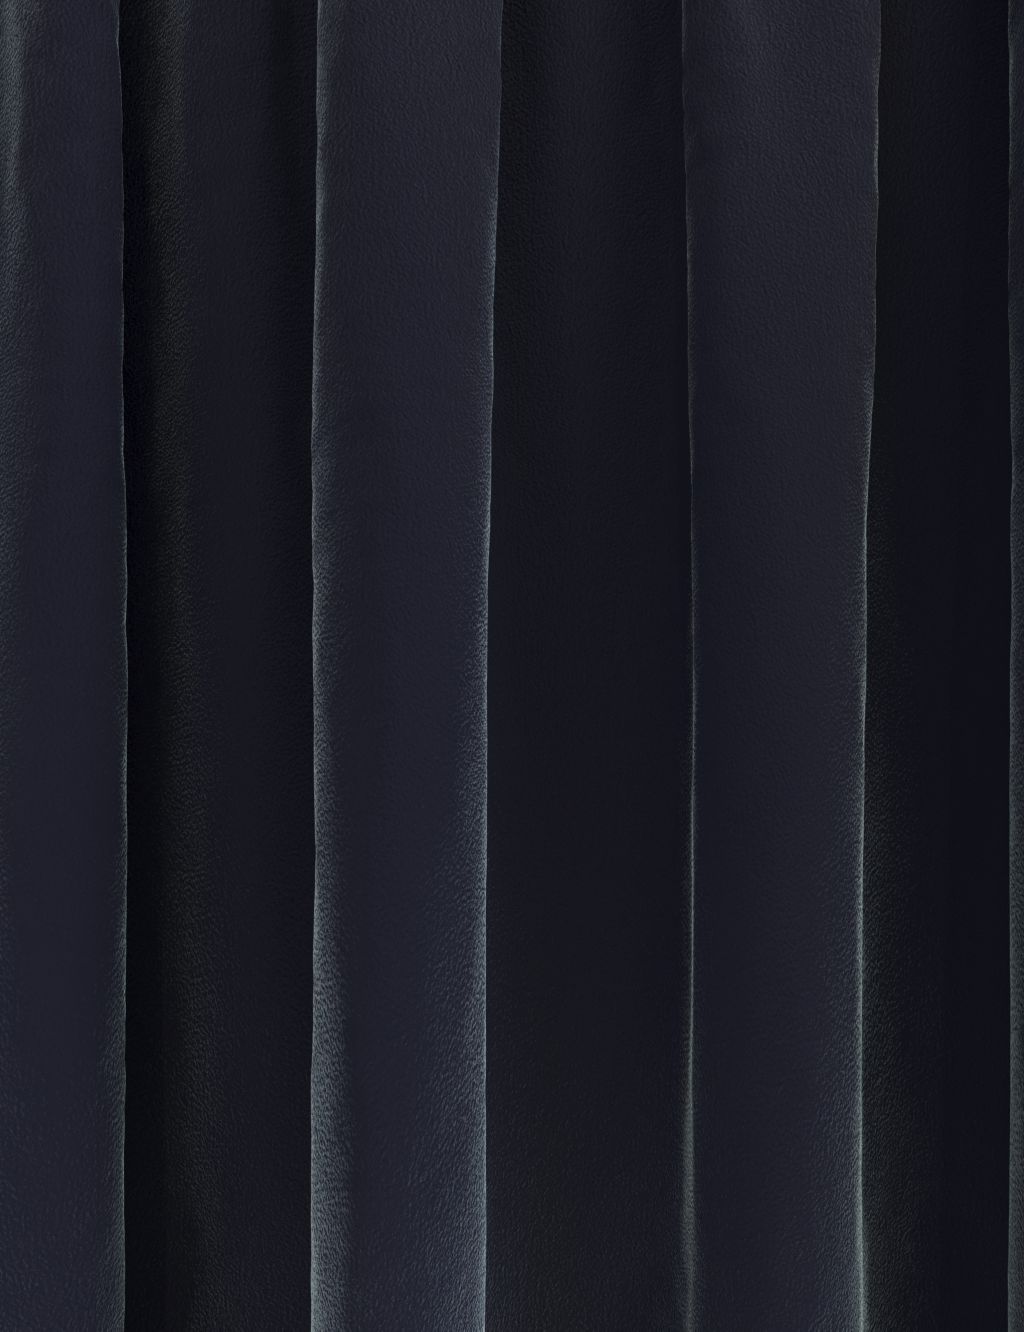 Velvet Pencil Pleat Ultra Temperature Smart Curtains 1 of 8